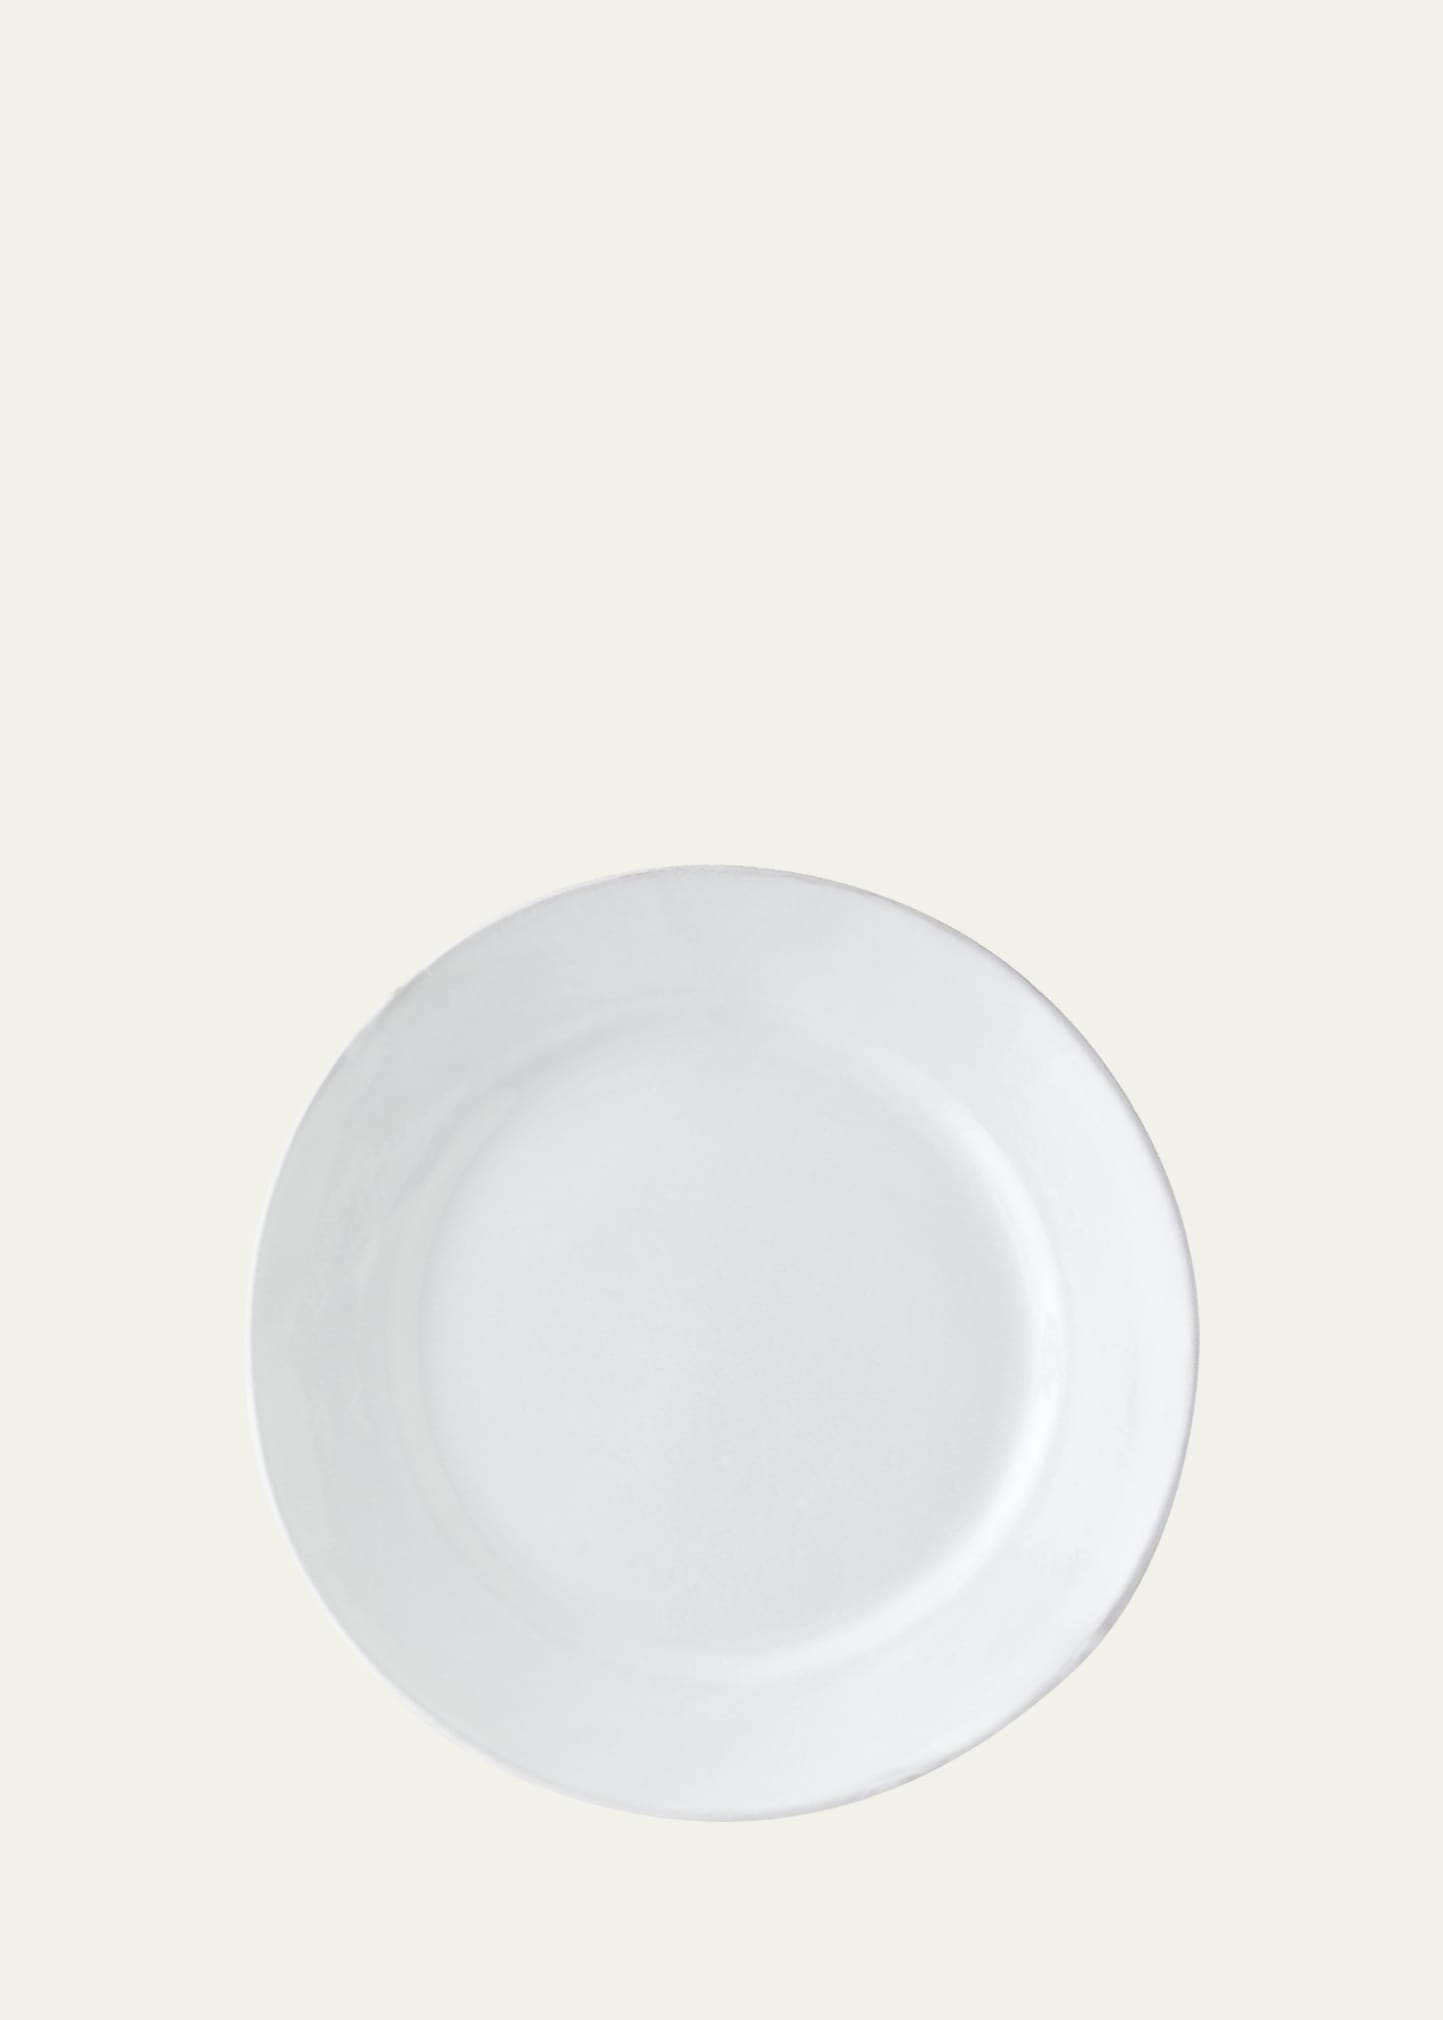 Astier De Vilatte Sobre Dinner Plate In White